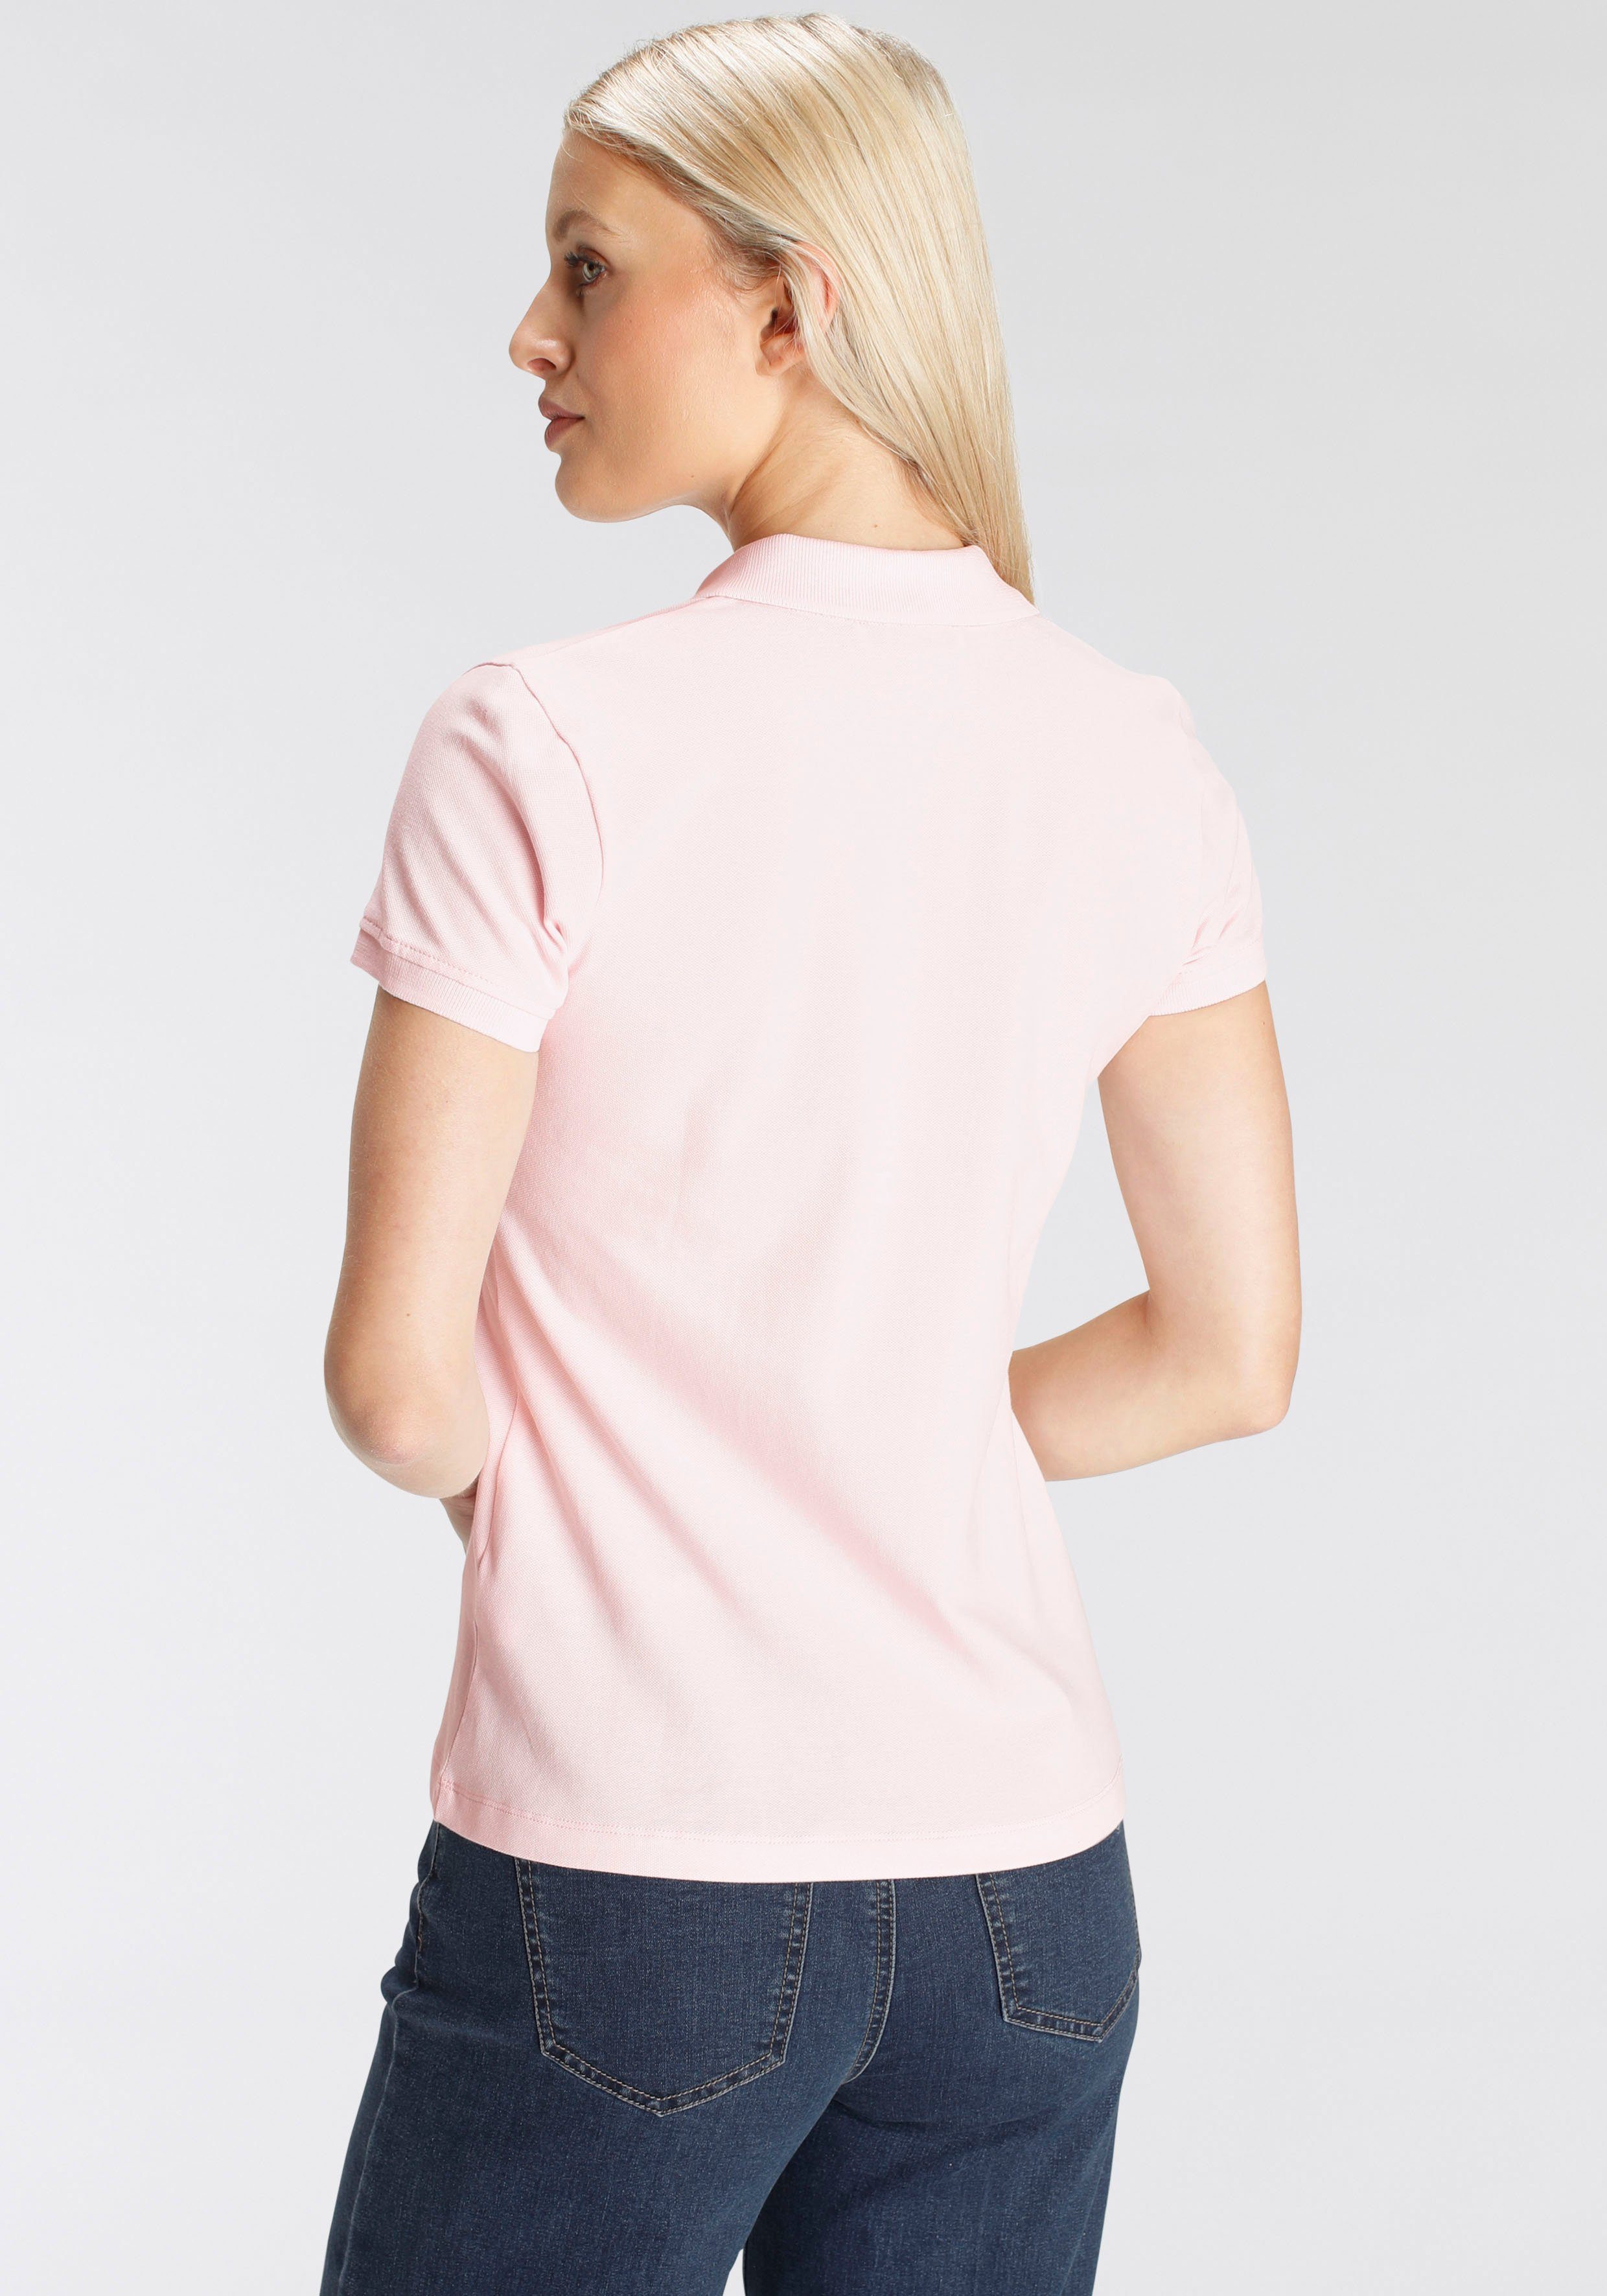 DELMAO Poloshirt in klassischer Form rosa NEUE - Farben MARKE! in verschiedenen